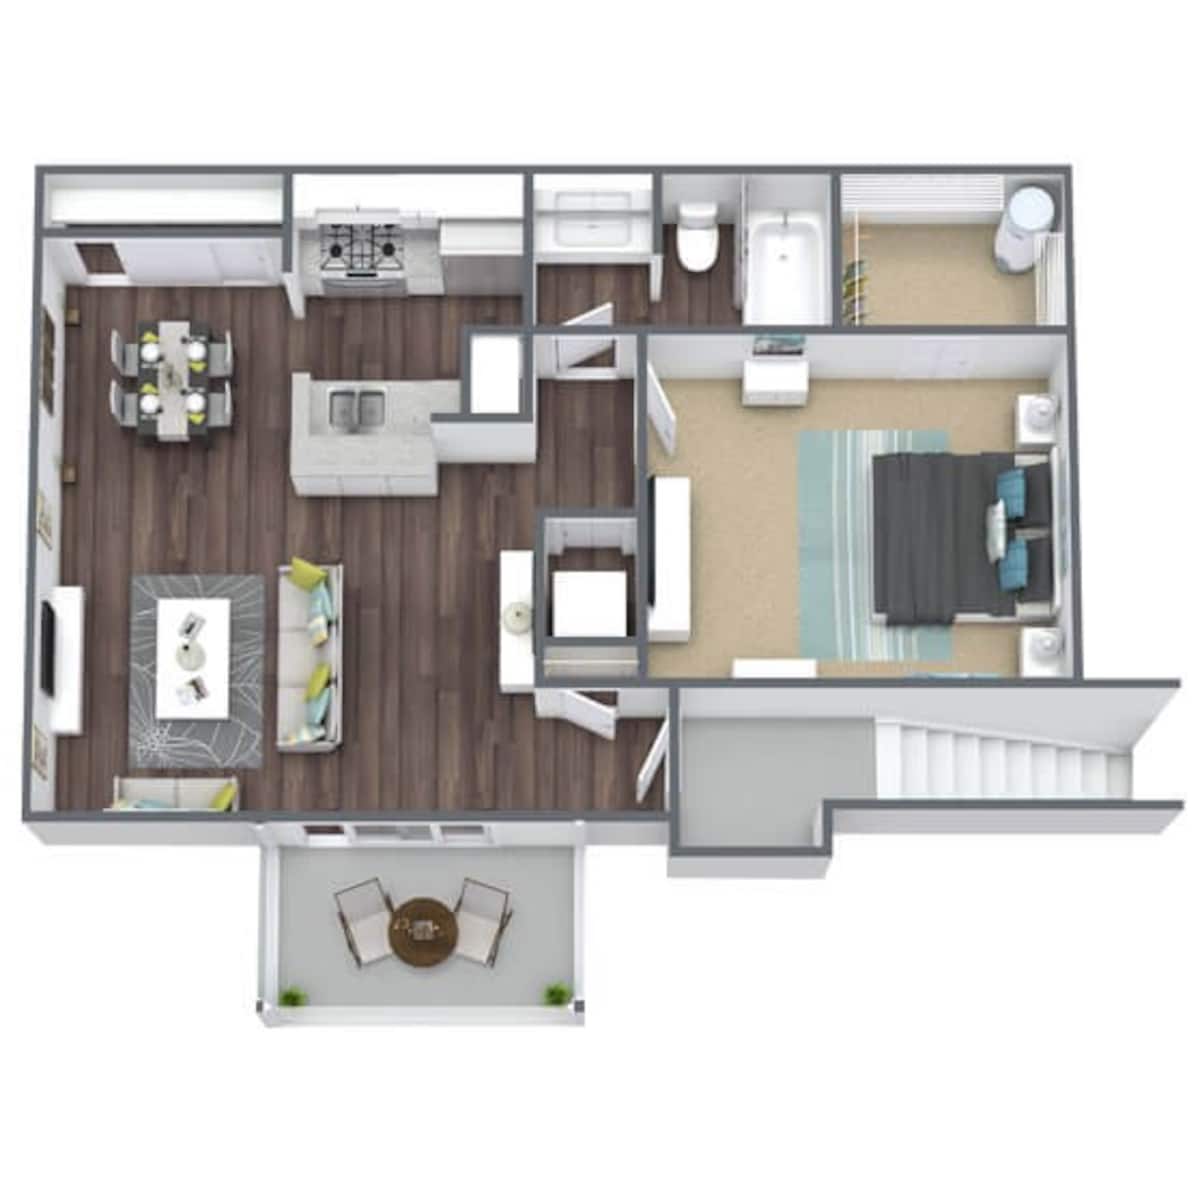 Floorplan diagram for 1 Bedroom, showing 1 bedroom